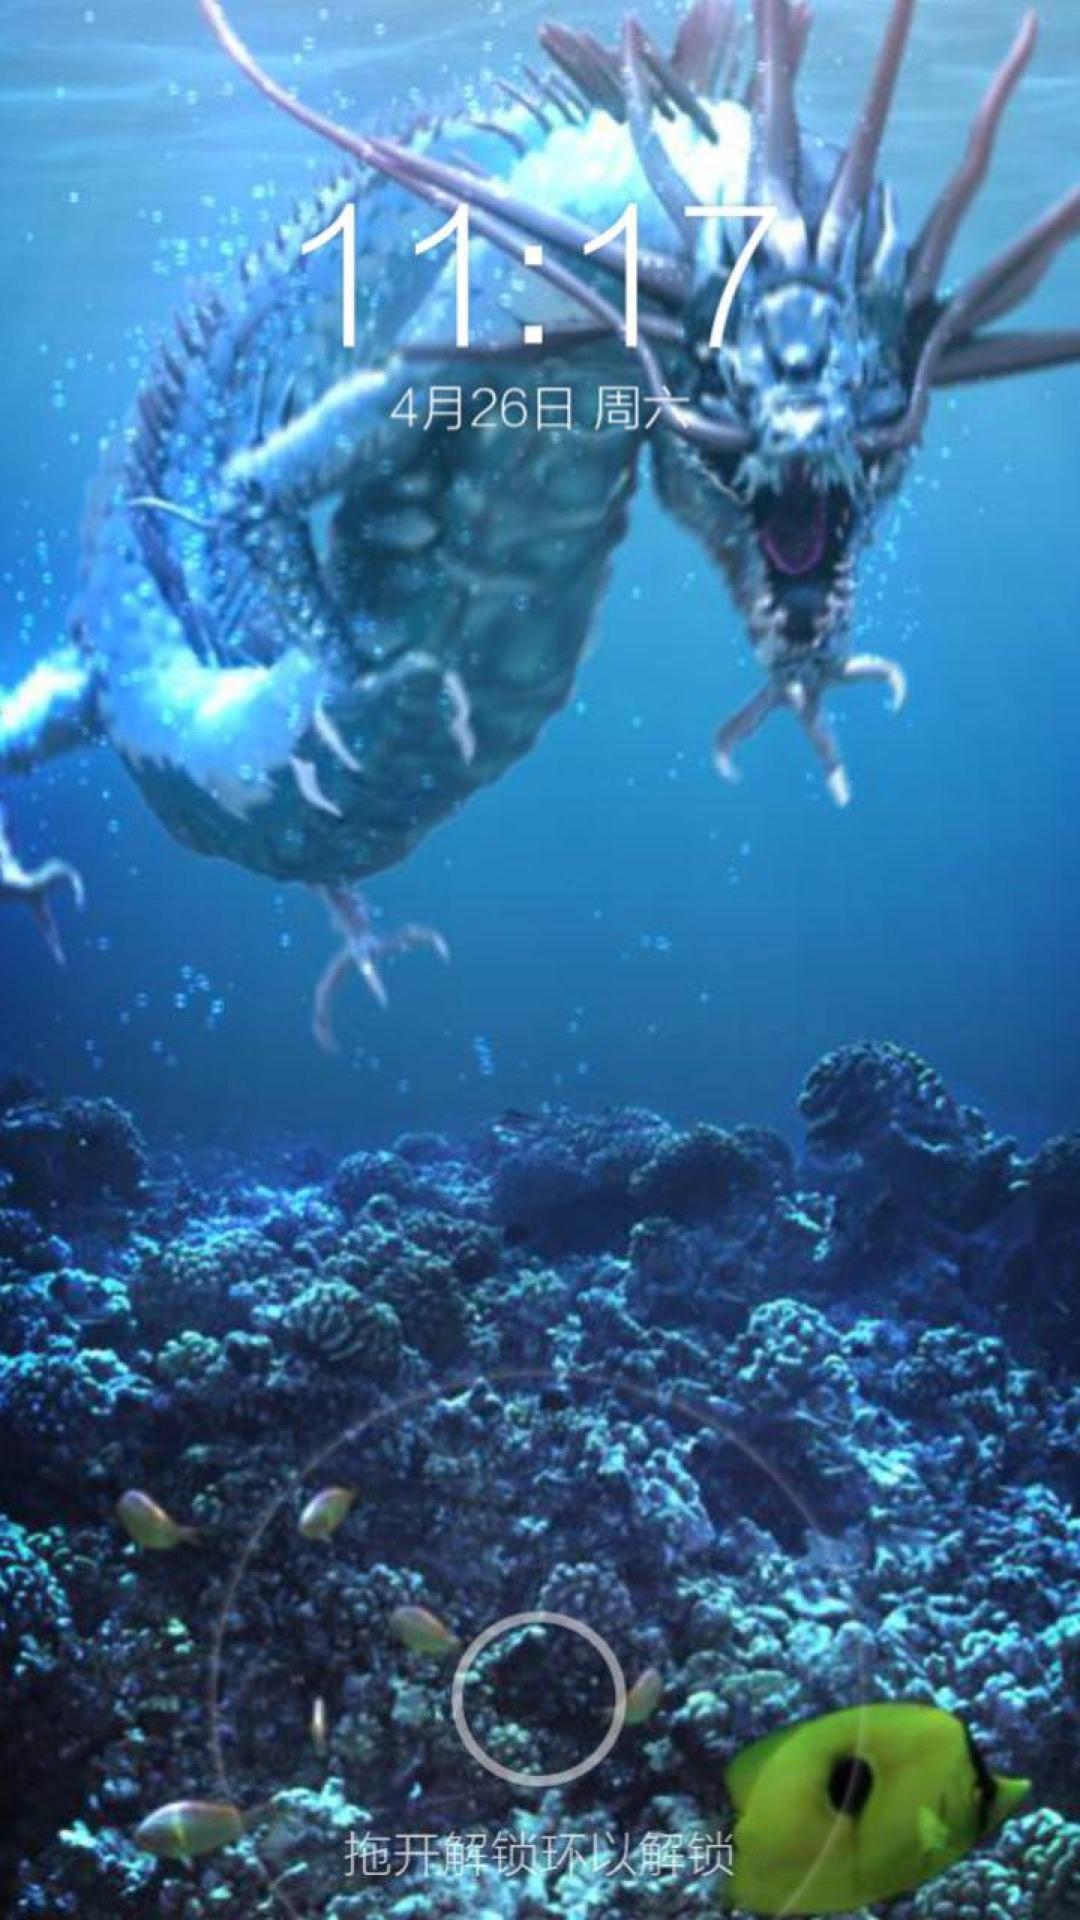 深海巨龙 一键锁屏官网免费下载_深海巨龙 一